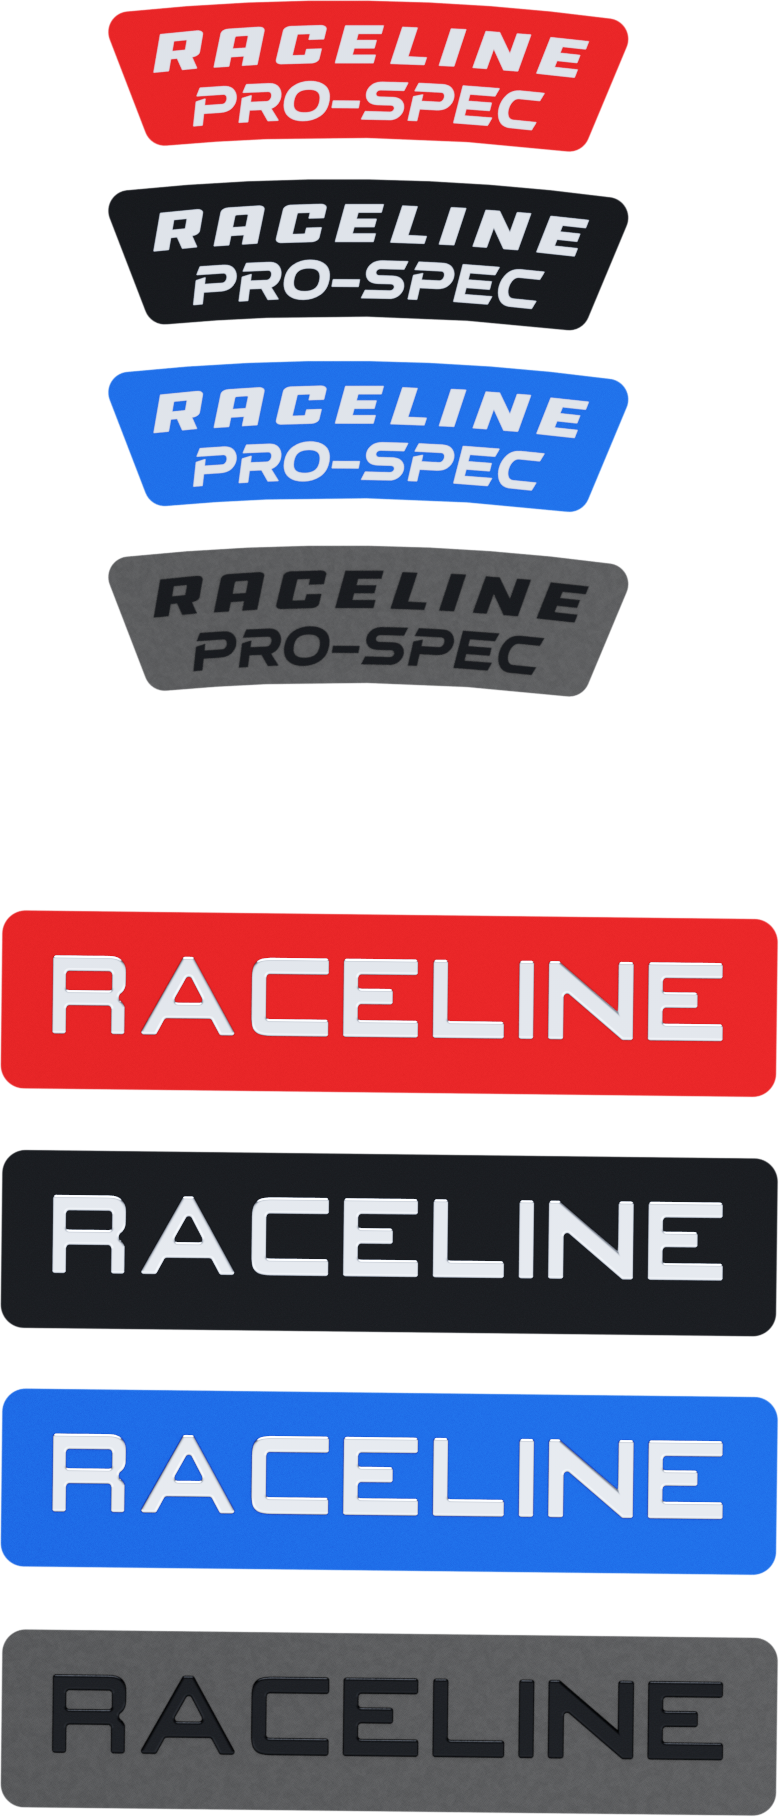 Raceline - Raceline Decal Package Blue/red/blk/gunmetal